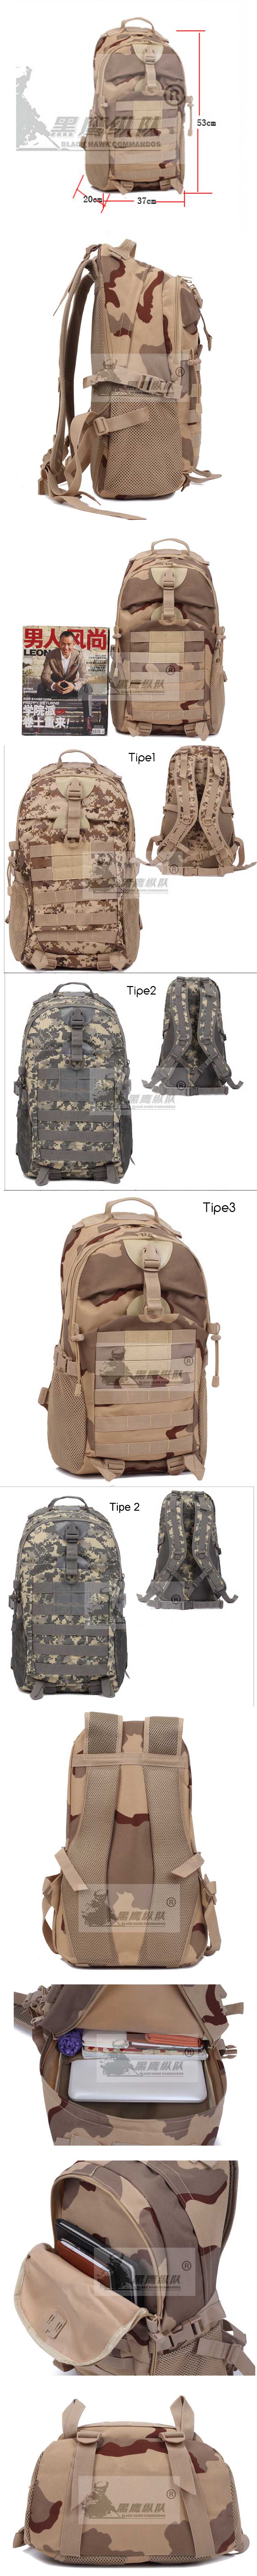 cari tas ransel army untuk kegiatan outdoor atau untuk sehari-hari di pfp ada puluhan model tas ransel army keren dengan bahan berkualitas yang bisa dipesan online, klik sekarang !